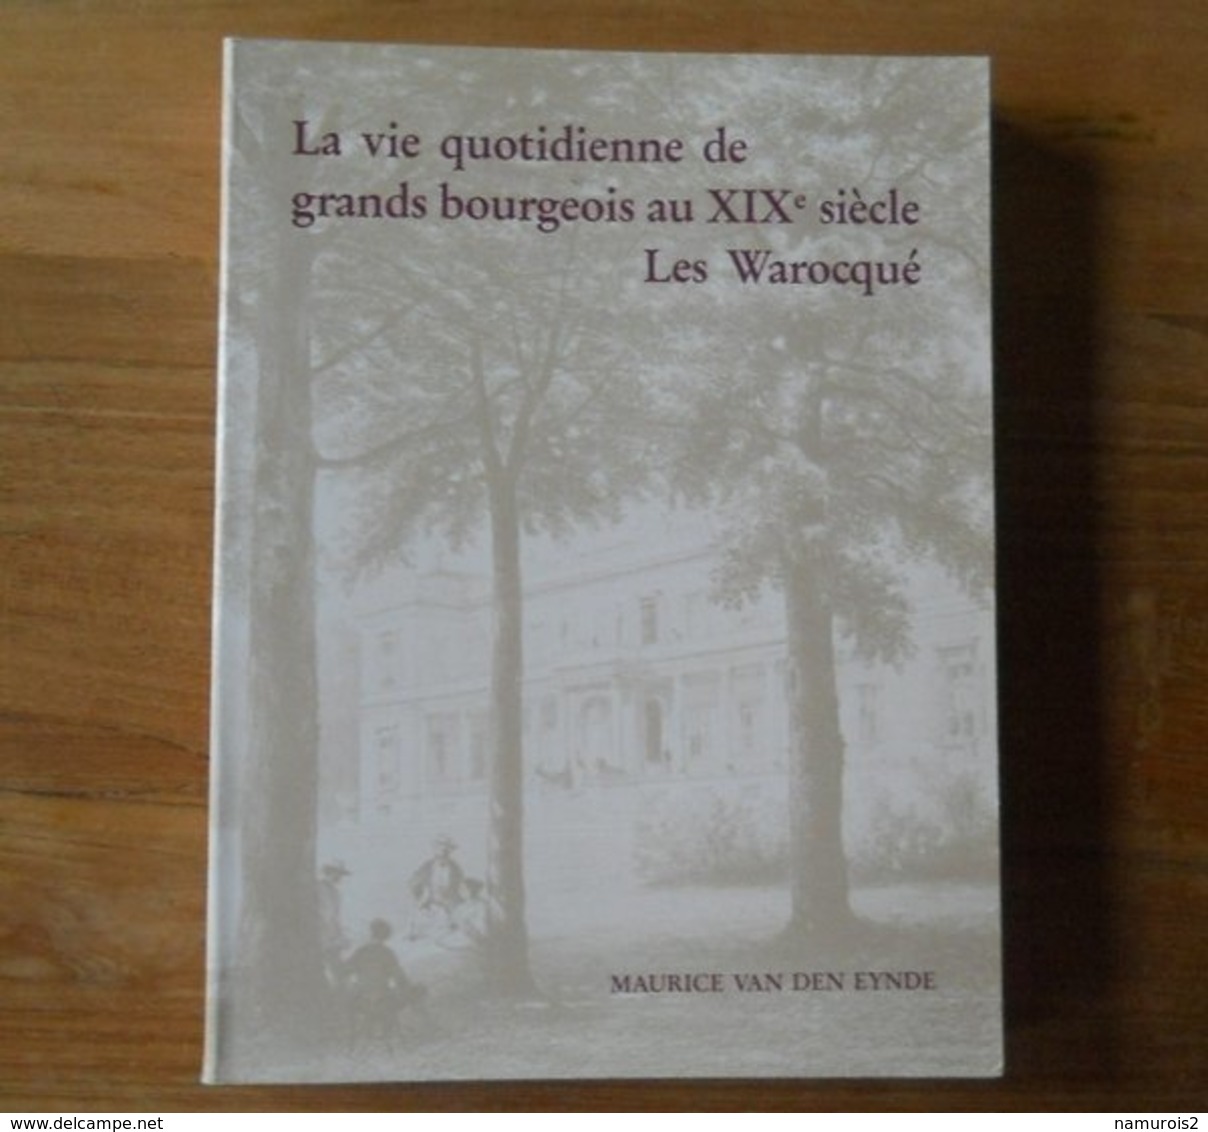 La Vie Quotidienne De Grands Bourgeois Au XIXème Siècle, Les Warocqué (Maurice Van Den Eynde)  -  Morlanwelz Mons - Histoire